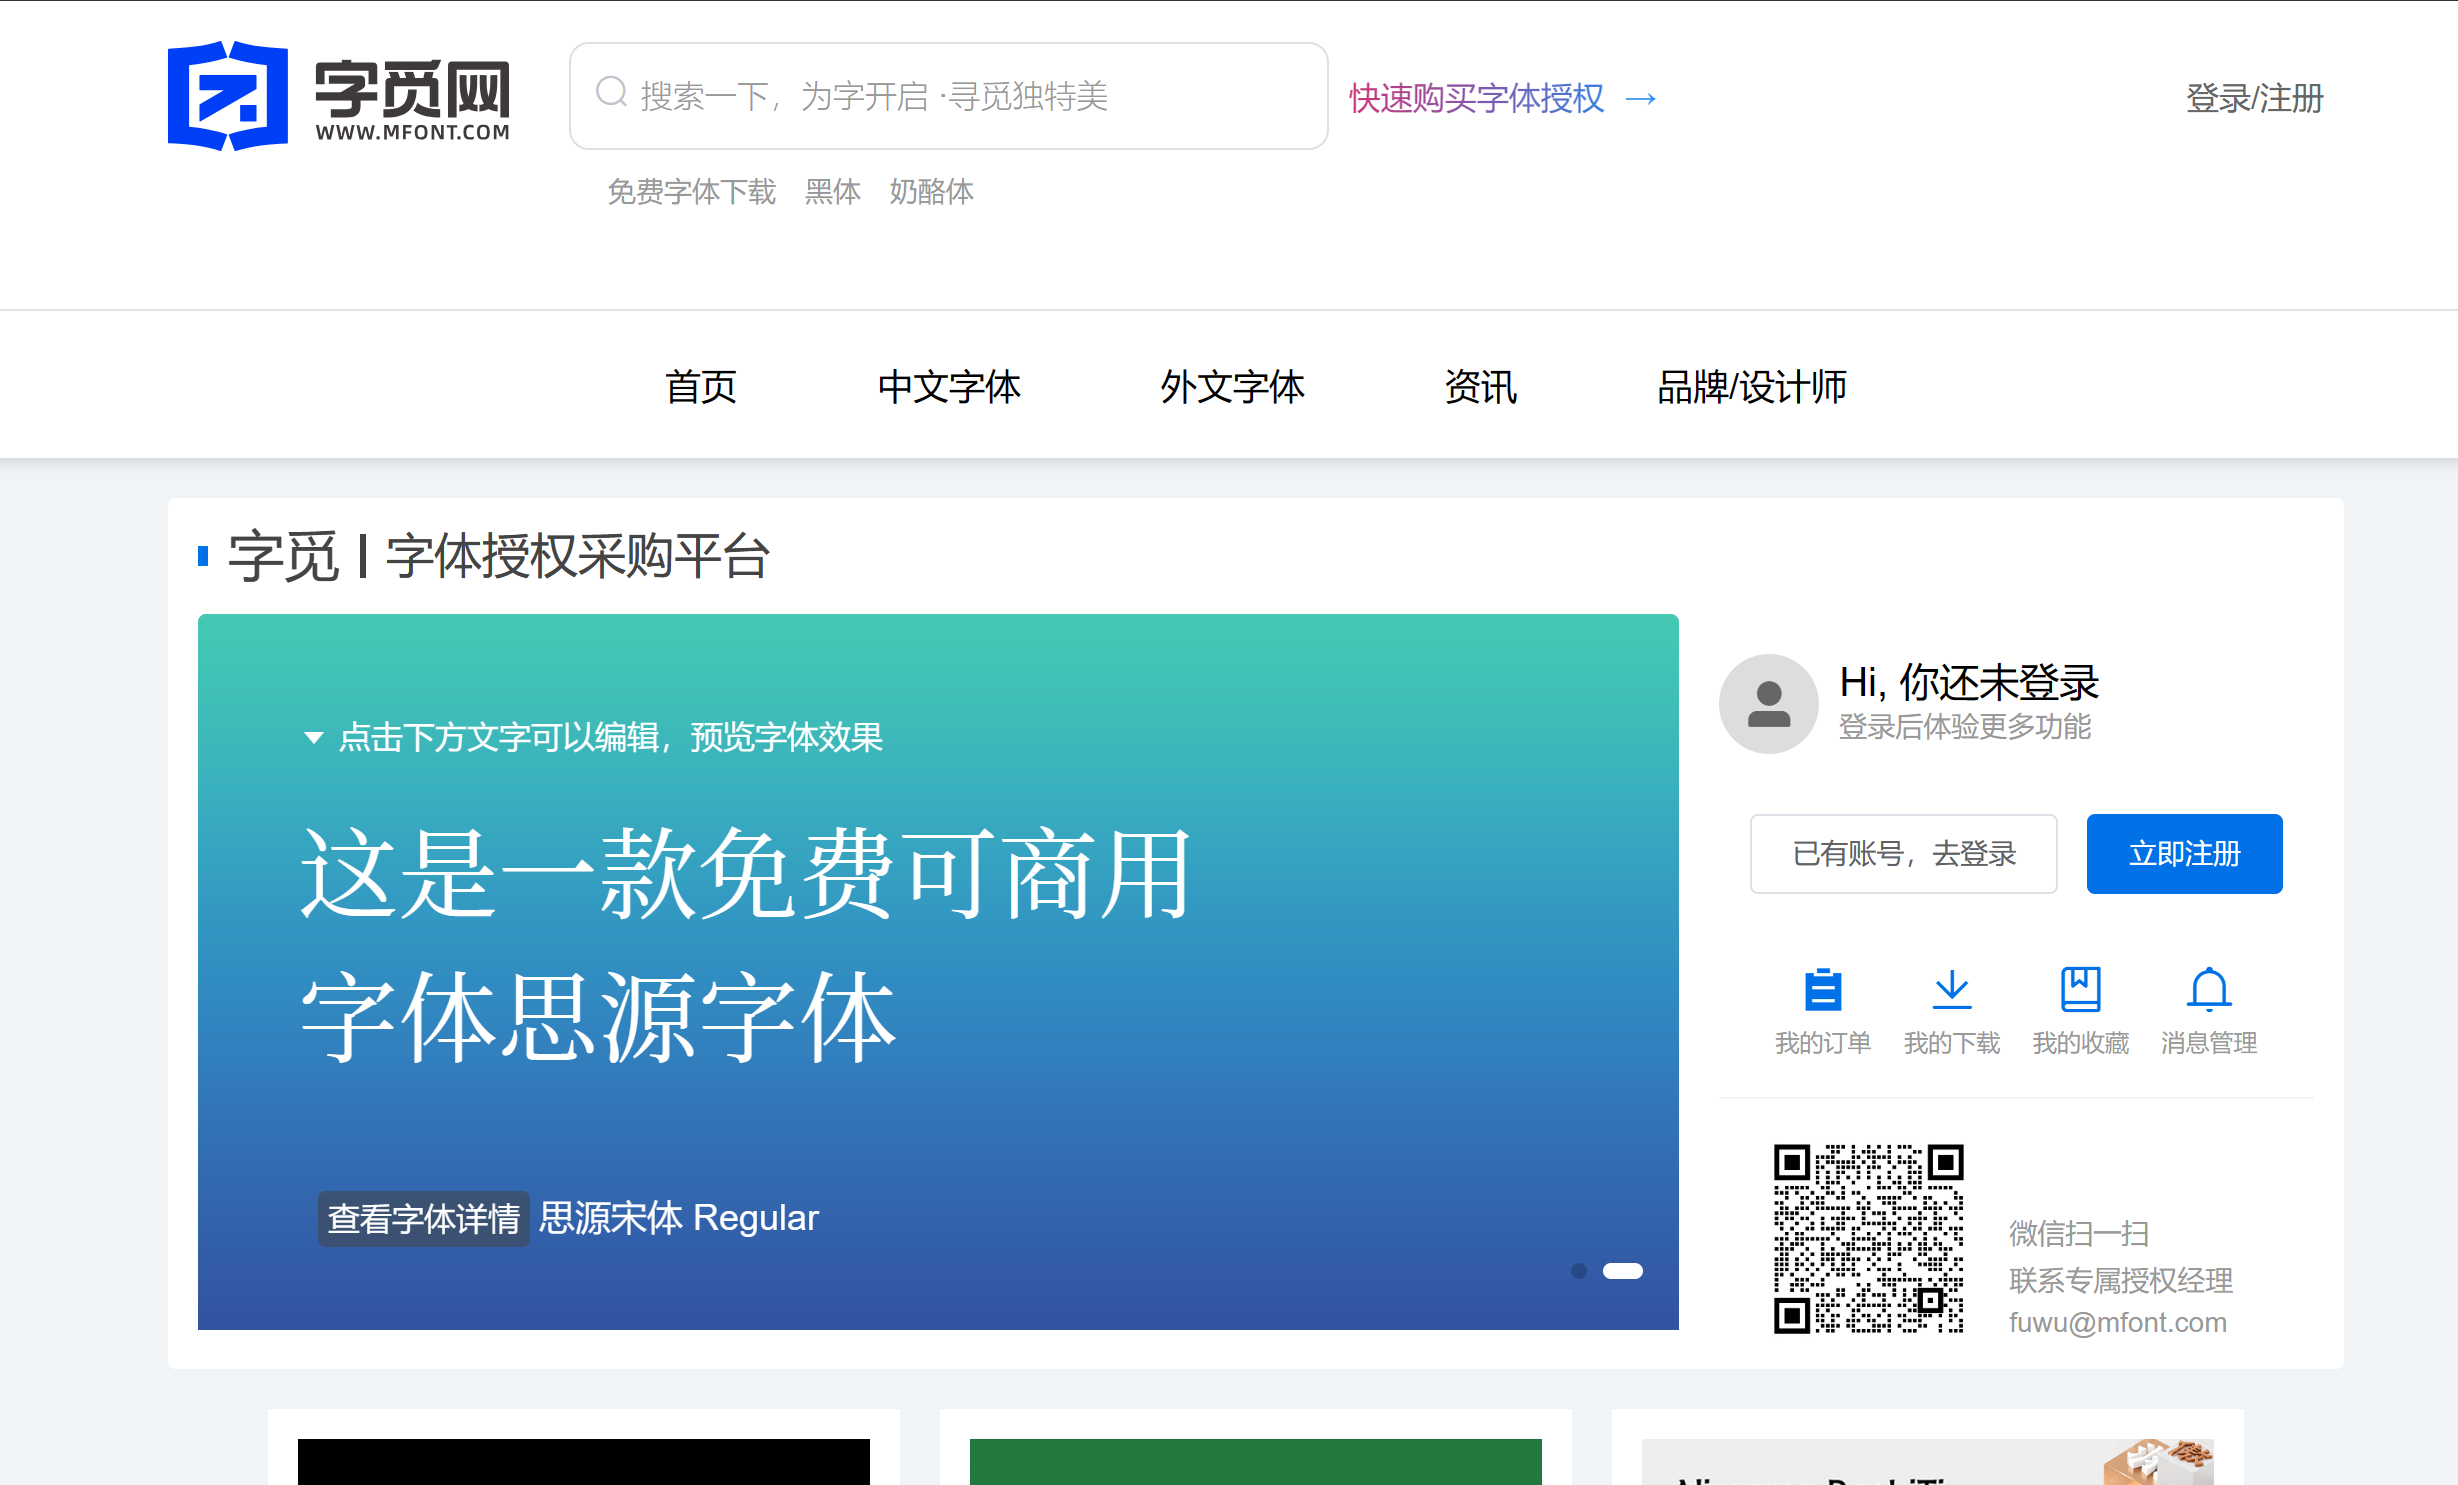 字觅网正式上线中国大陆市场，为全球用户提供更广泛、更便捷的正版字体选择